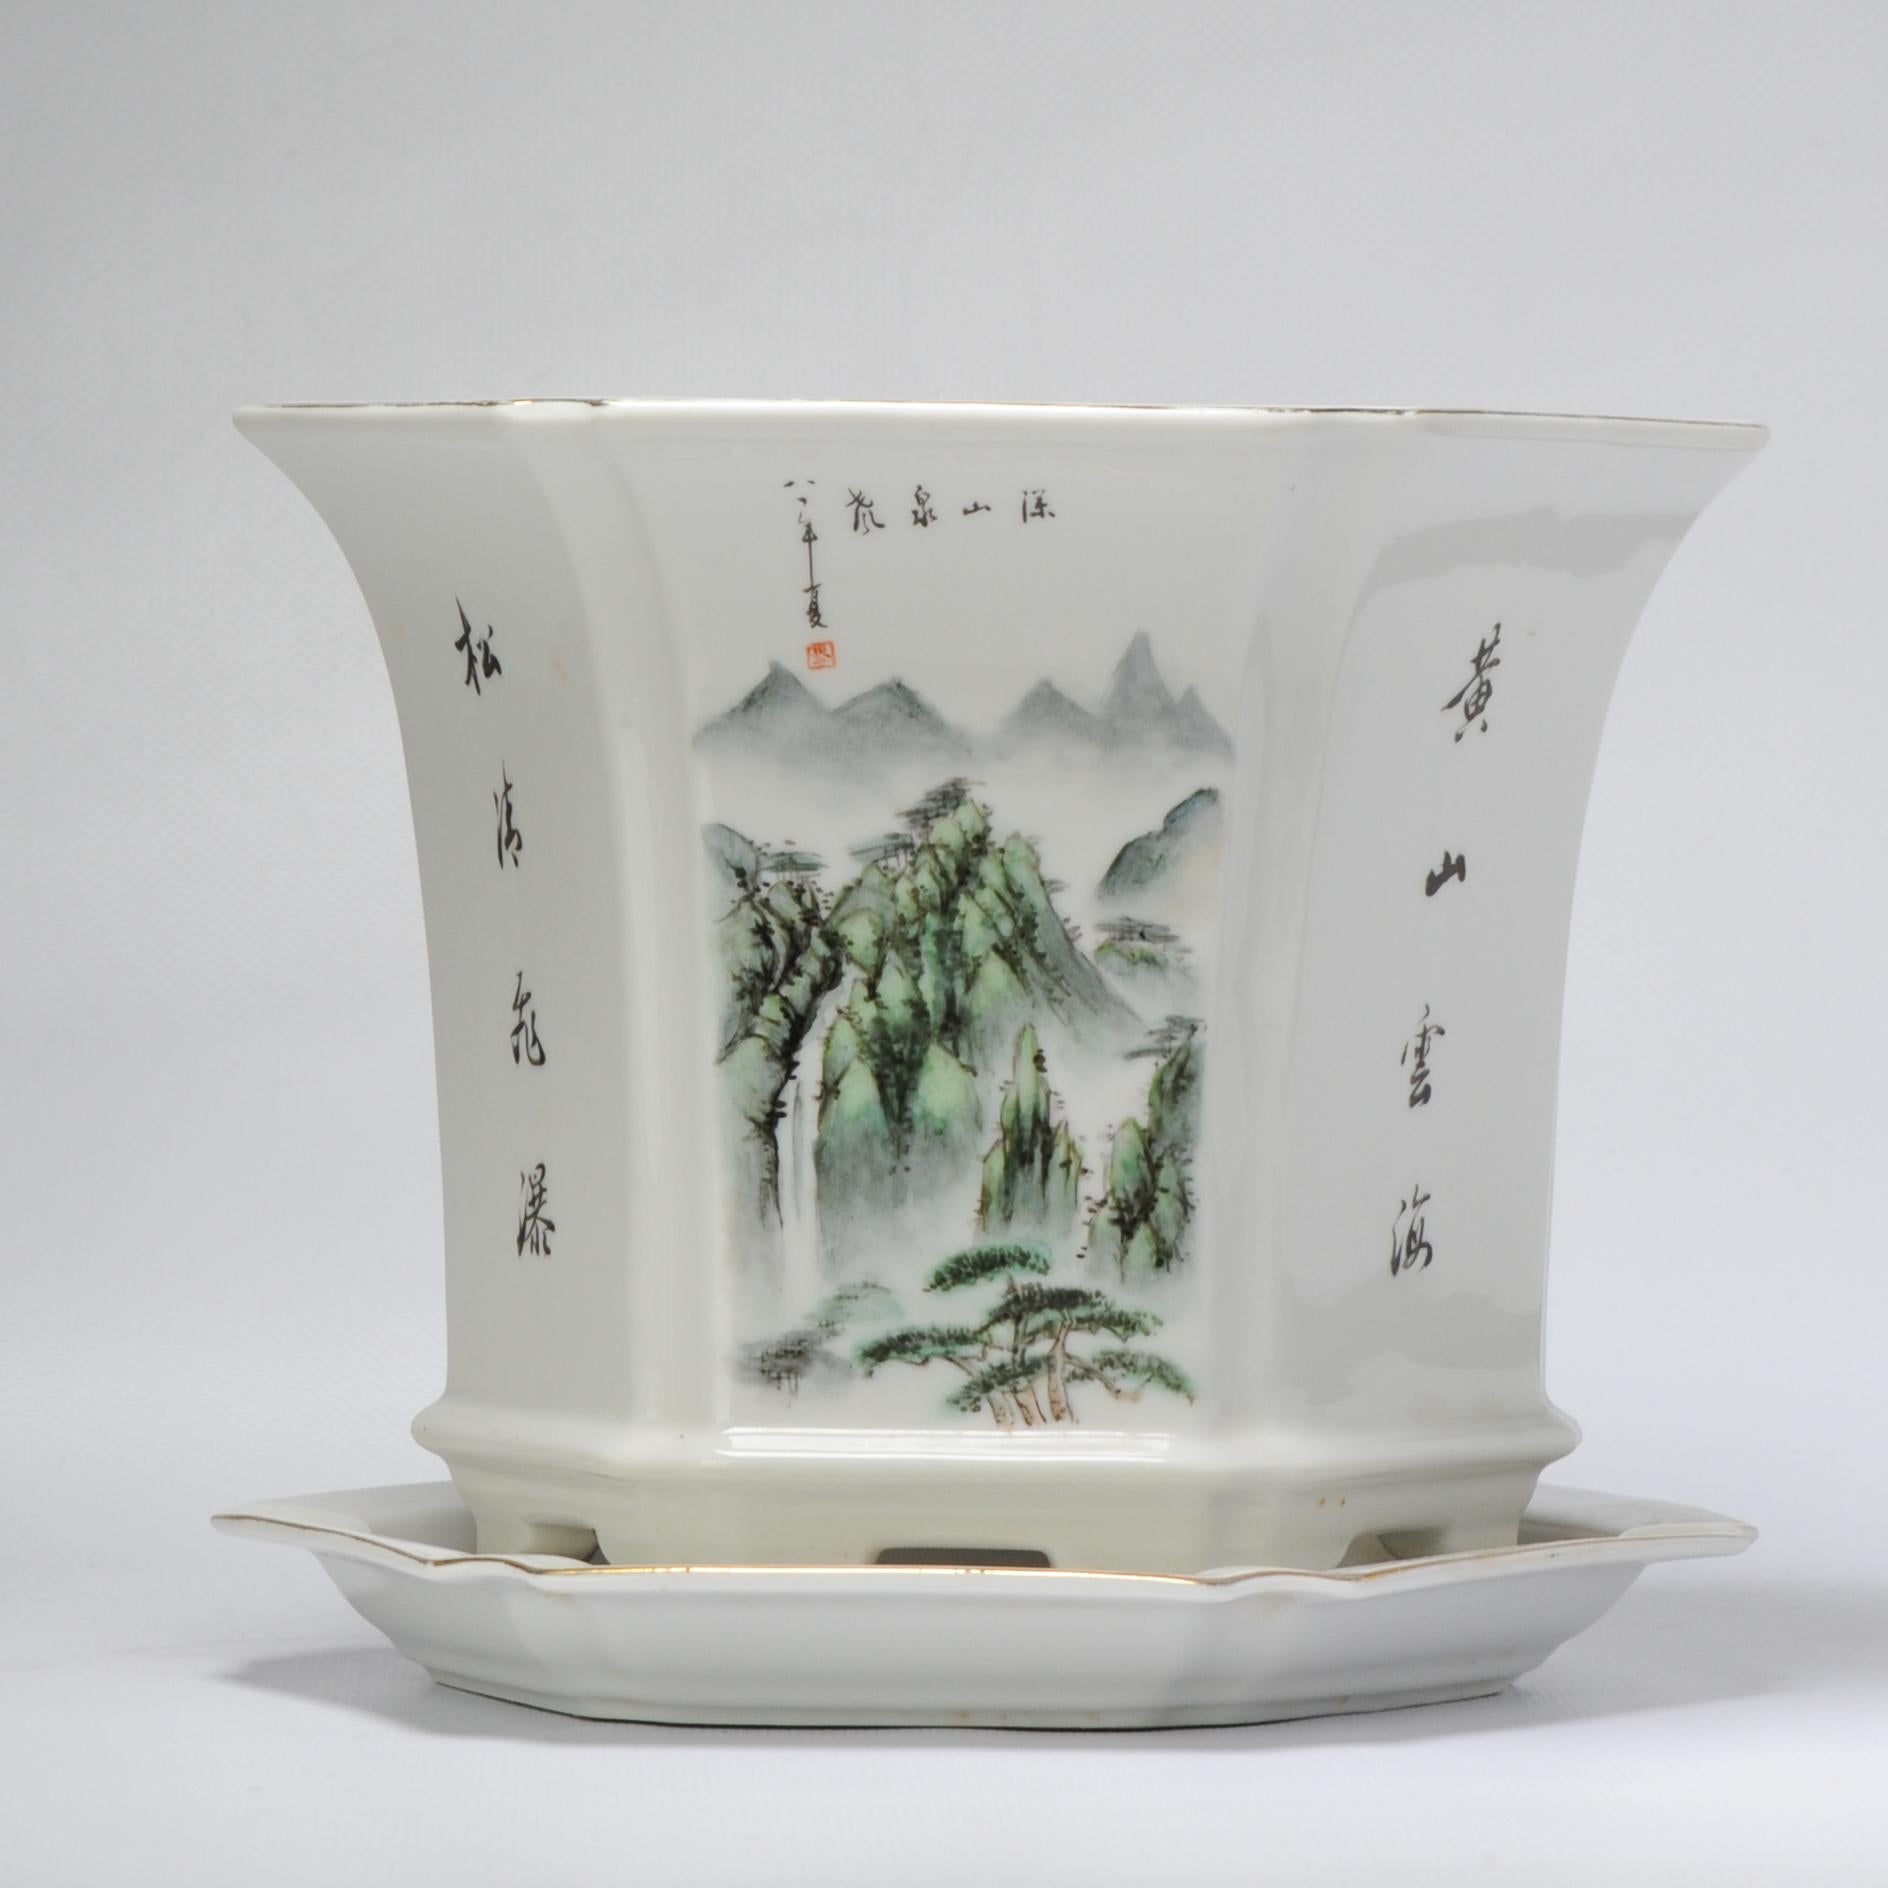 Rare Vintage 1981 Chinese Porcelain Proc Landscape Jardiniere Planter China For Sale 1